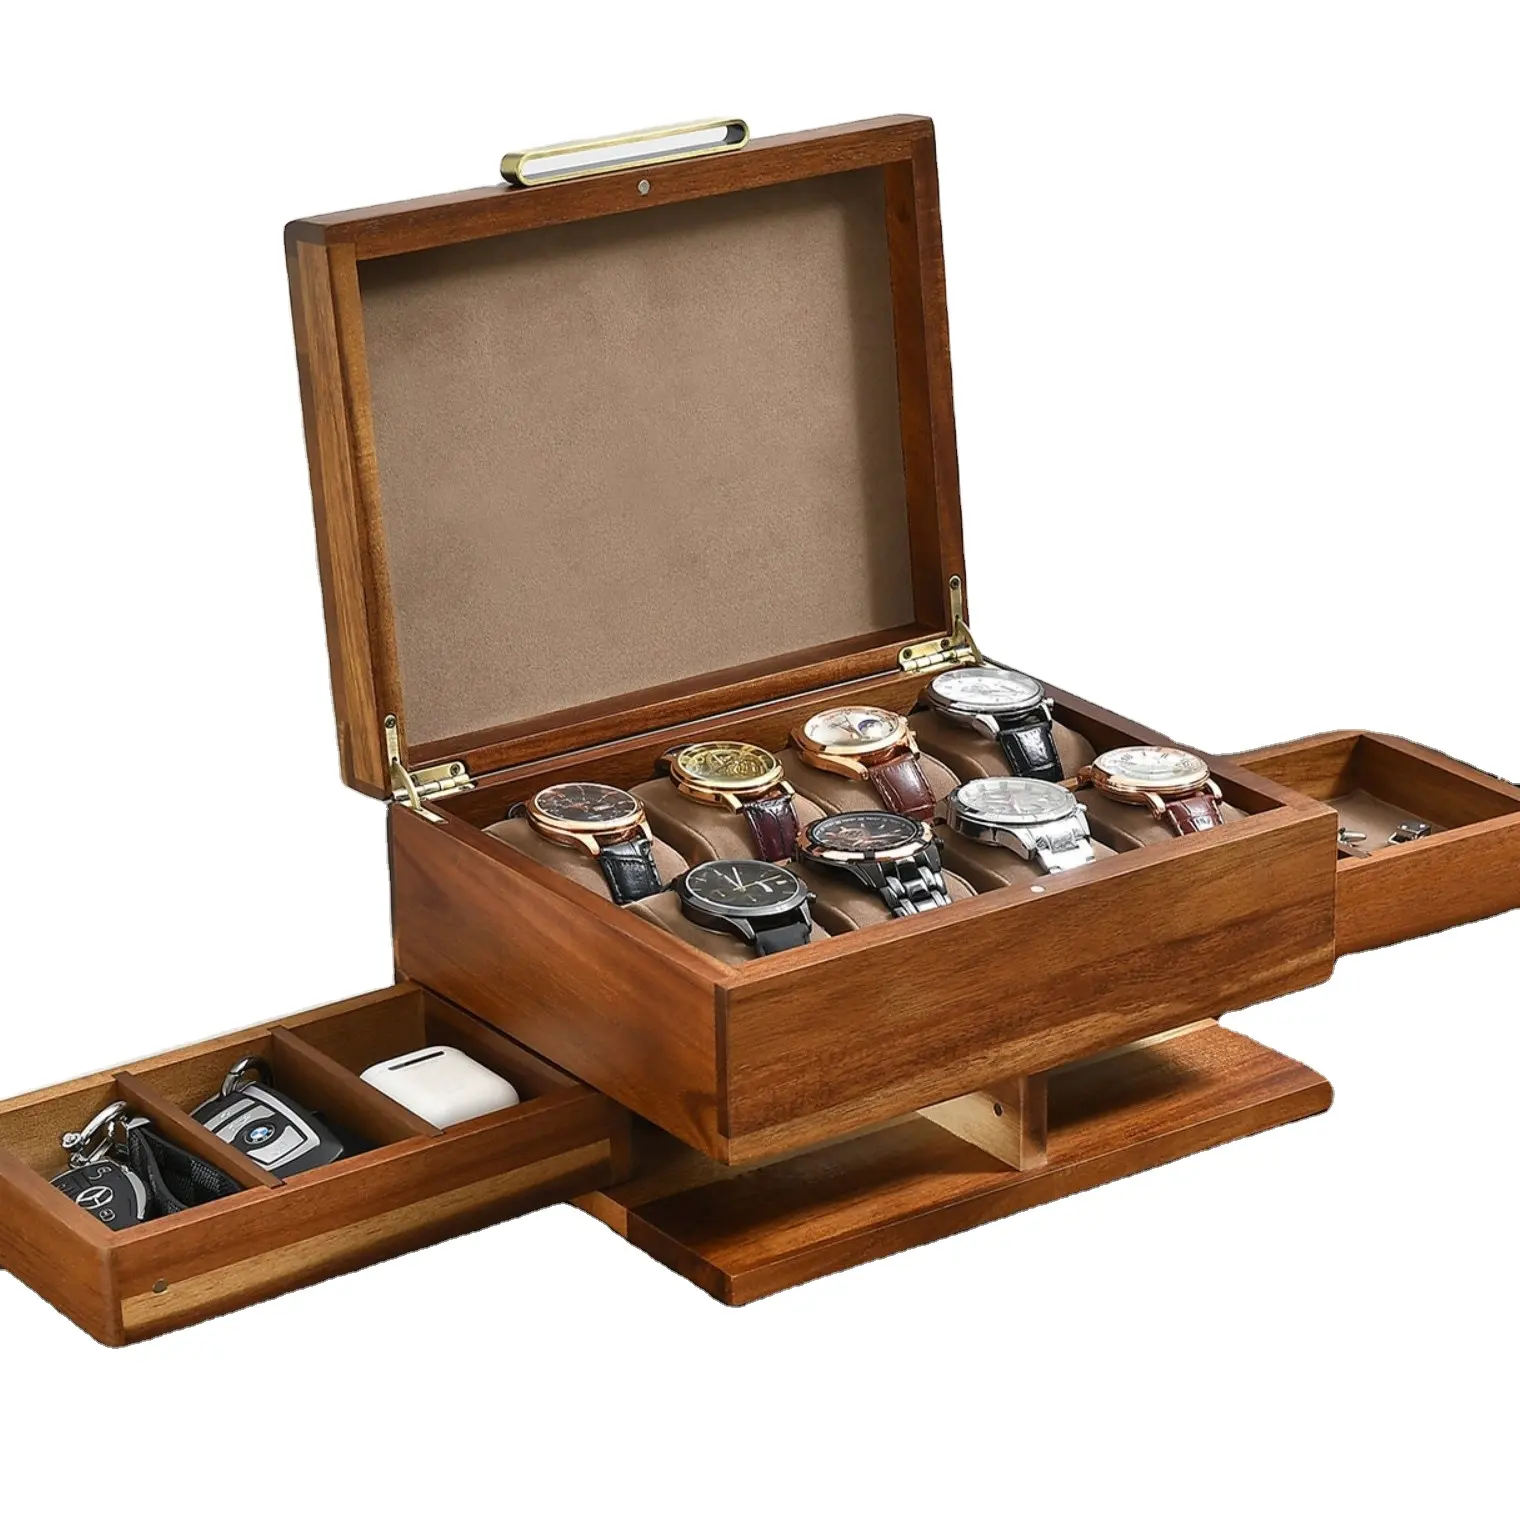 Kotak kayu parfum kustom kerajinan terukir 8 Slot pengatur tampilan buatan tangan dengan aksesori kotak jam kayu untuk hadiah